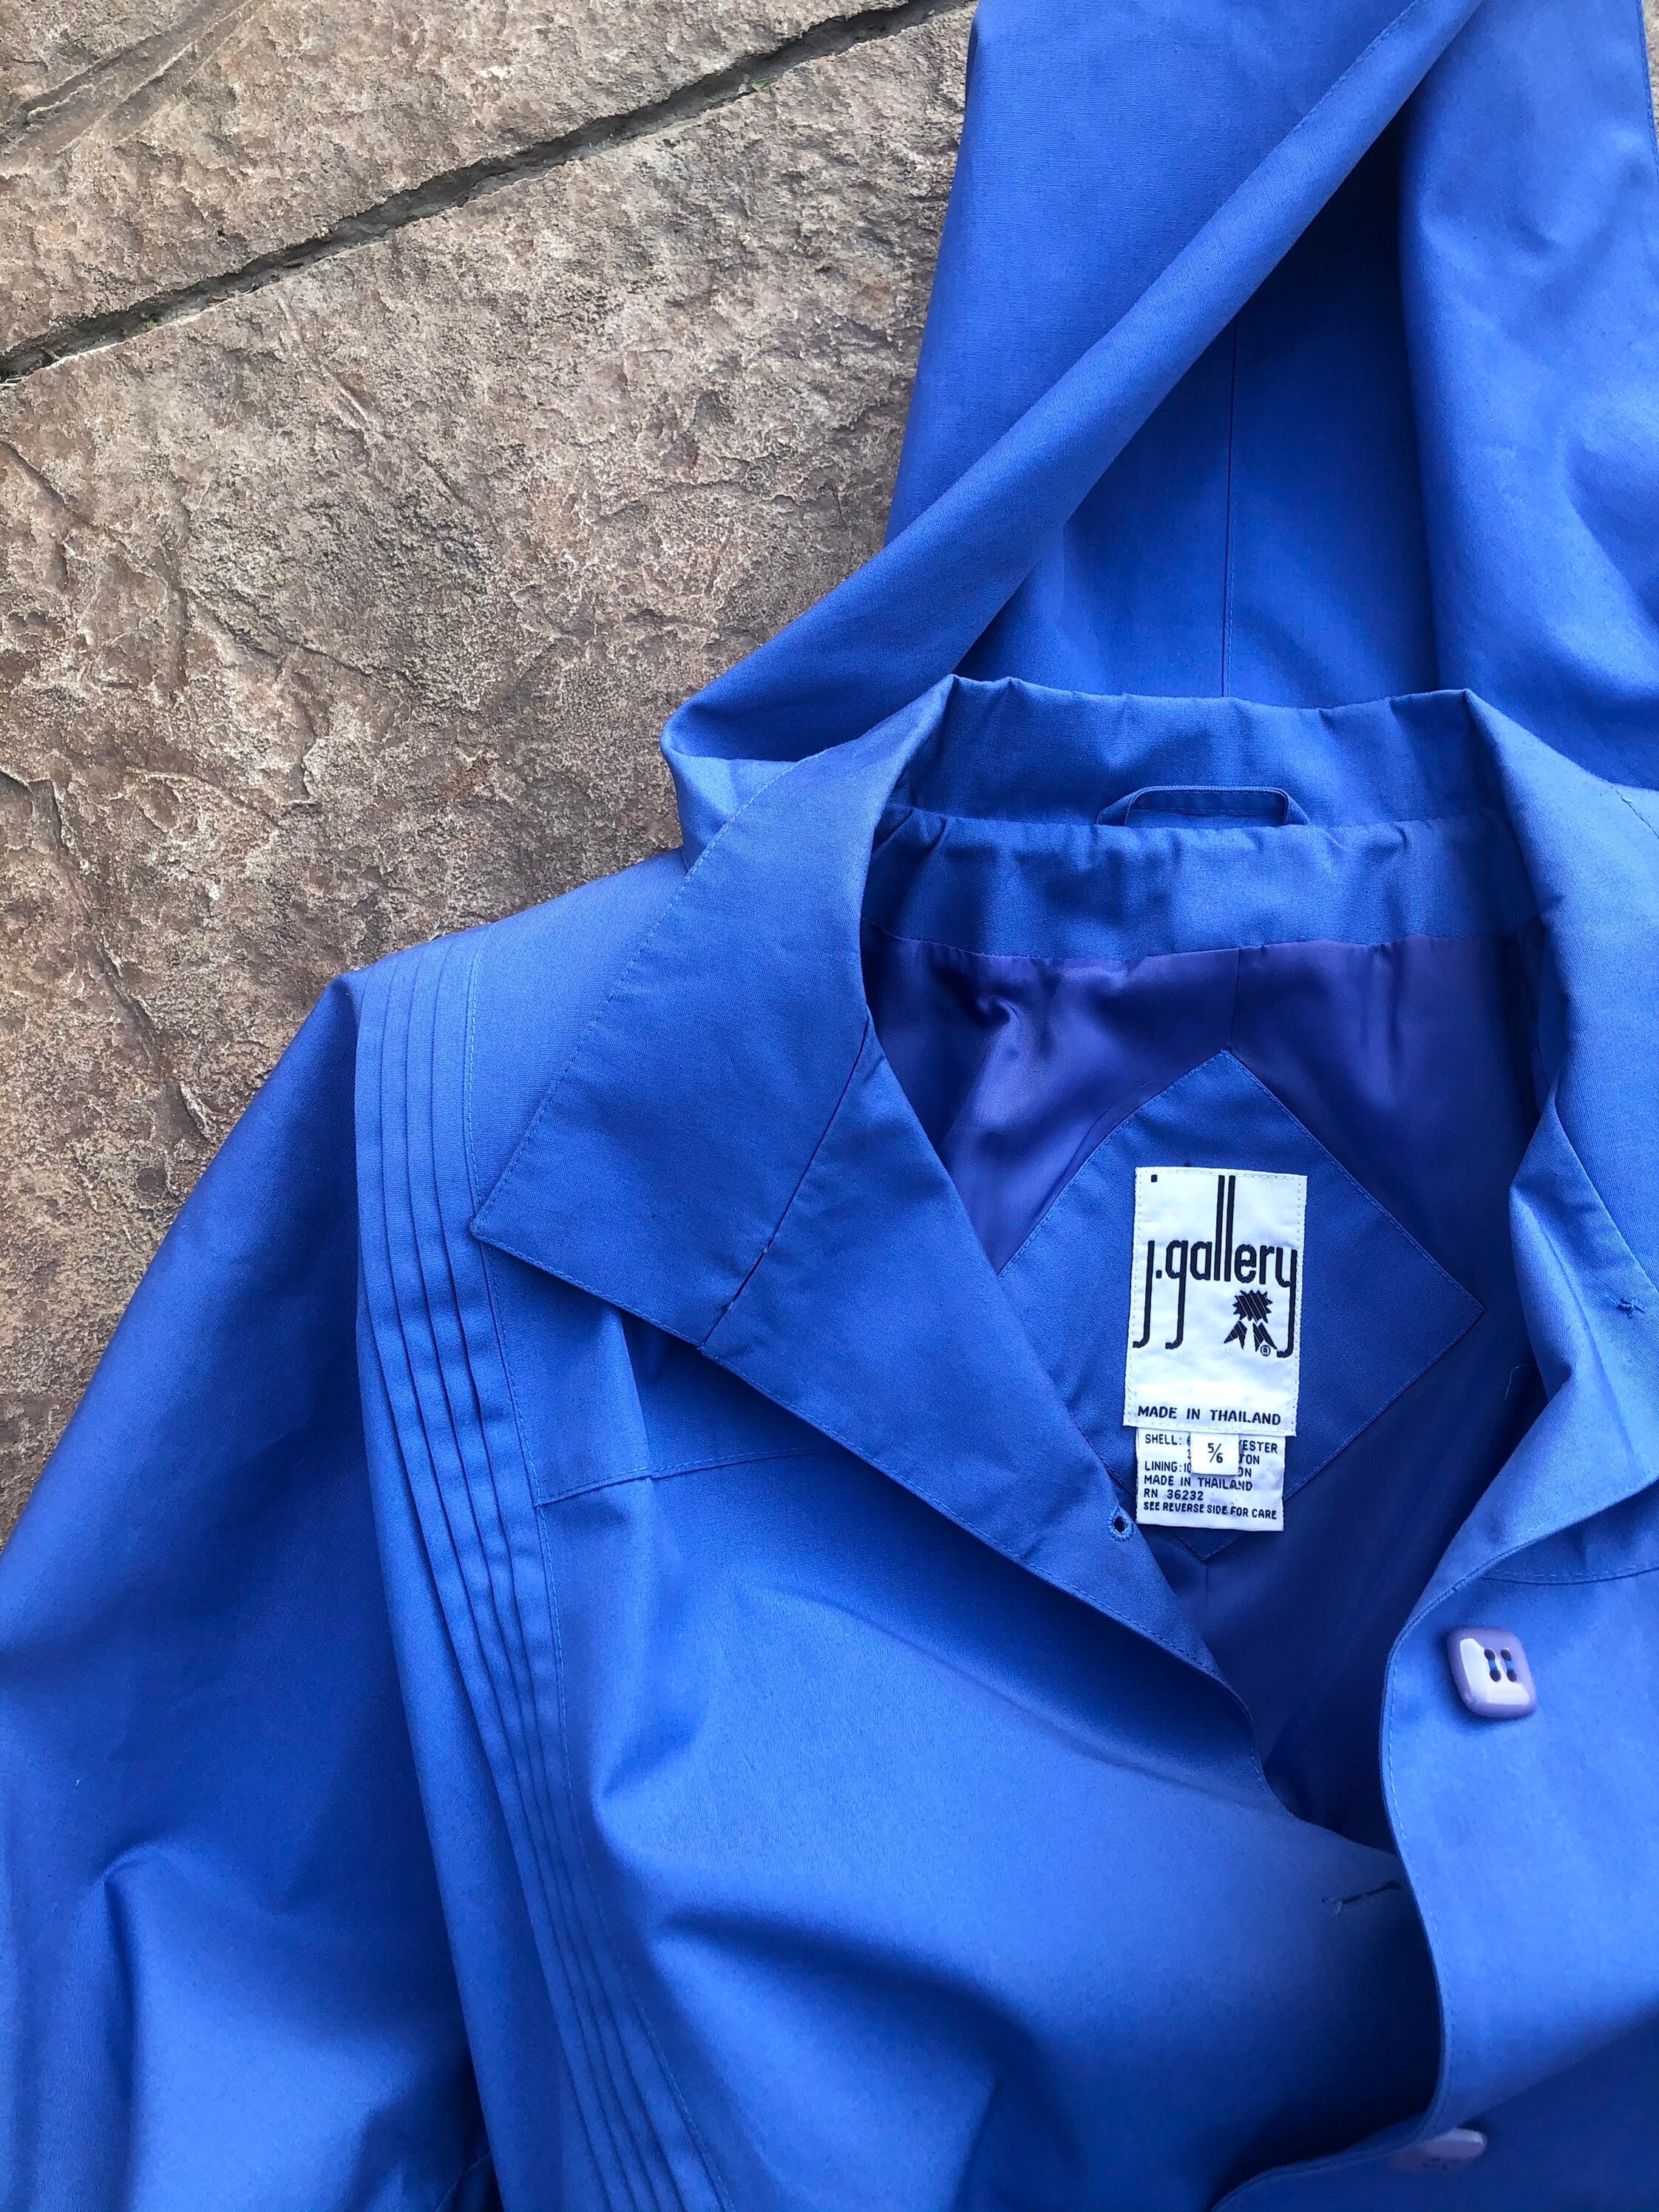 Vintage Blue Trench Coat Cottagecore Hooded Jacket 1980s - Etsy